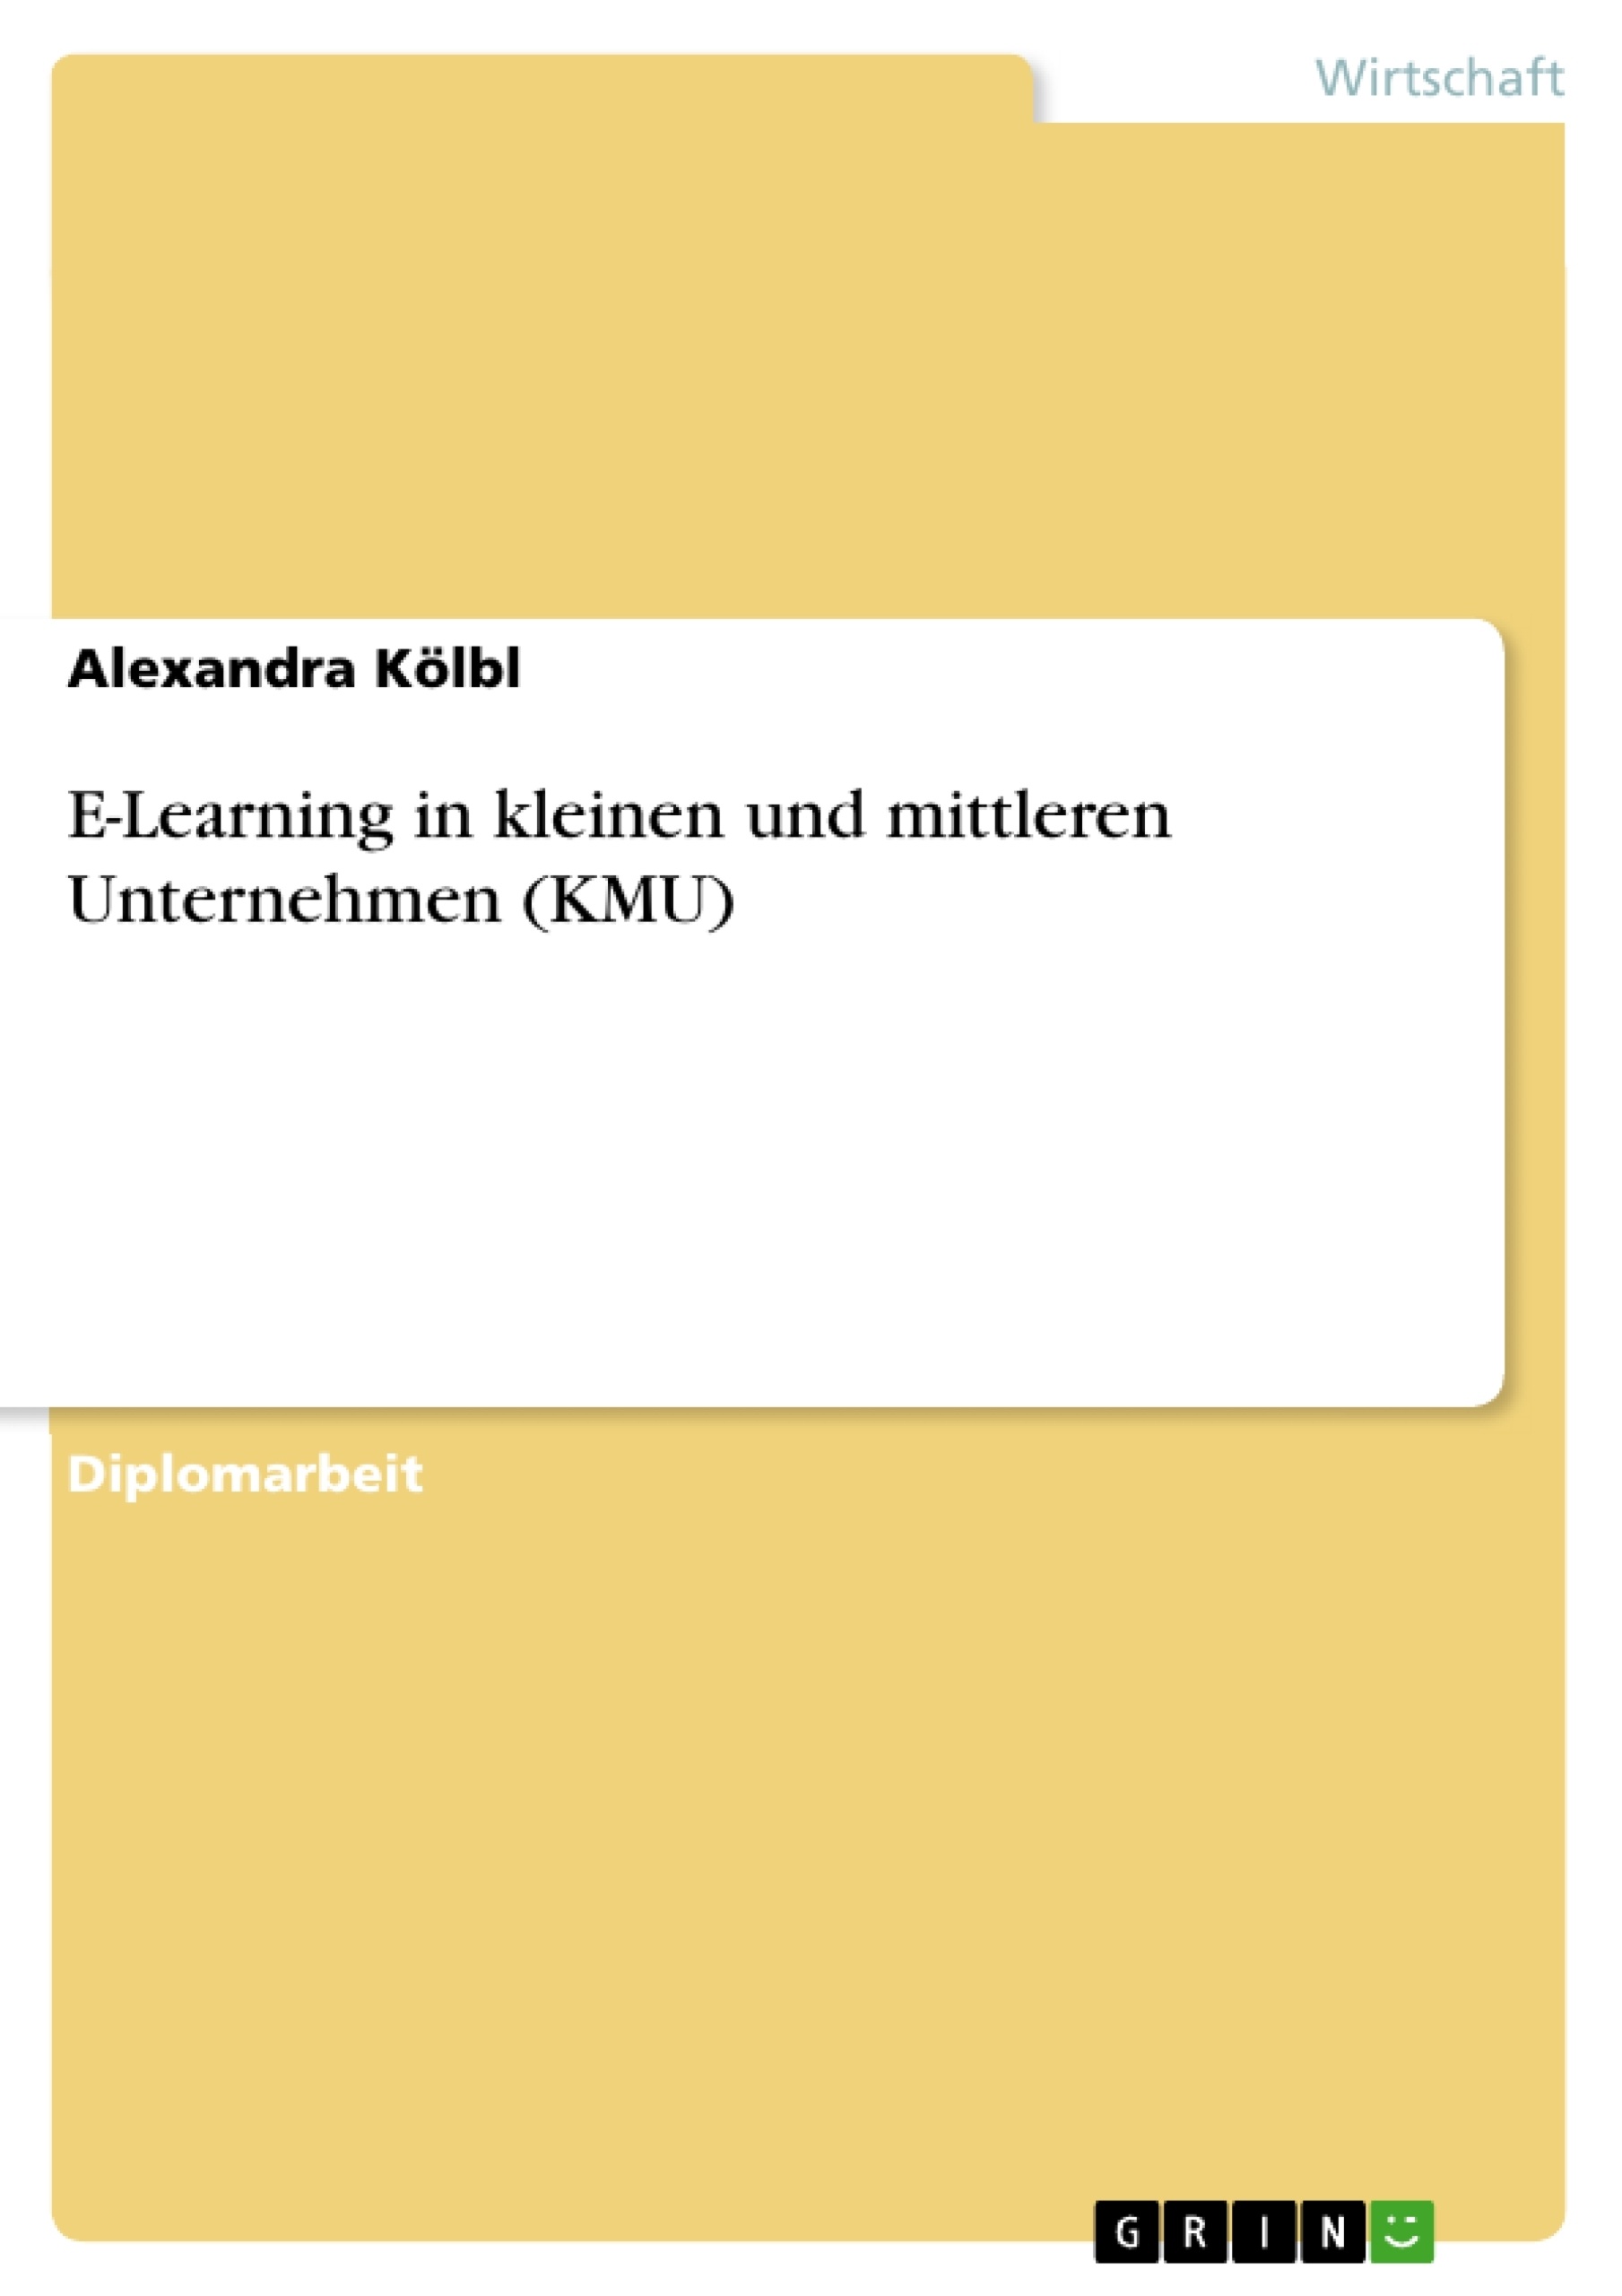 Title: E-Learning in kleinen und mittleren Unternehmen (KMU)